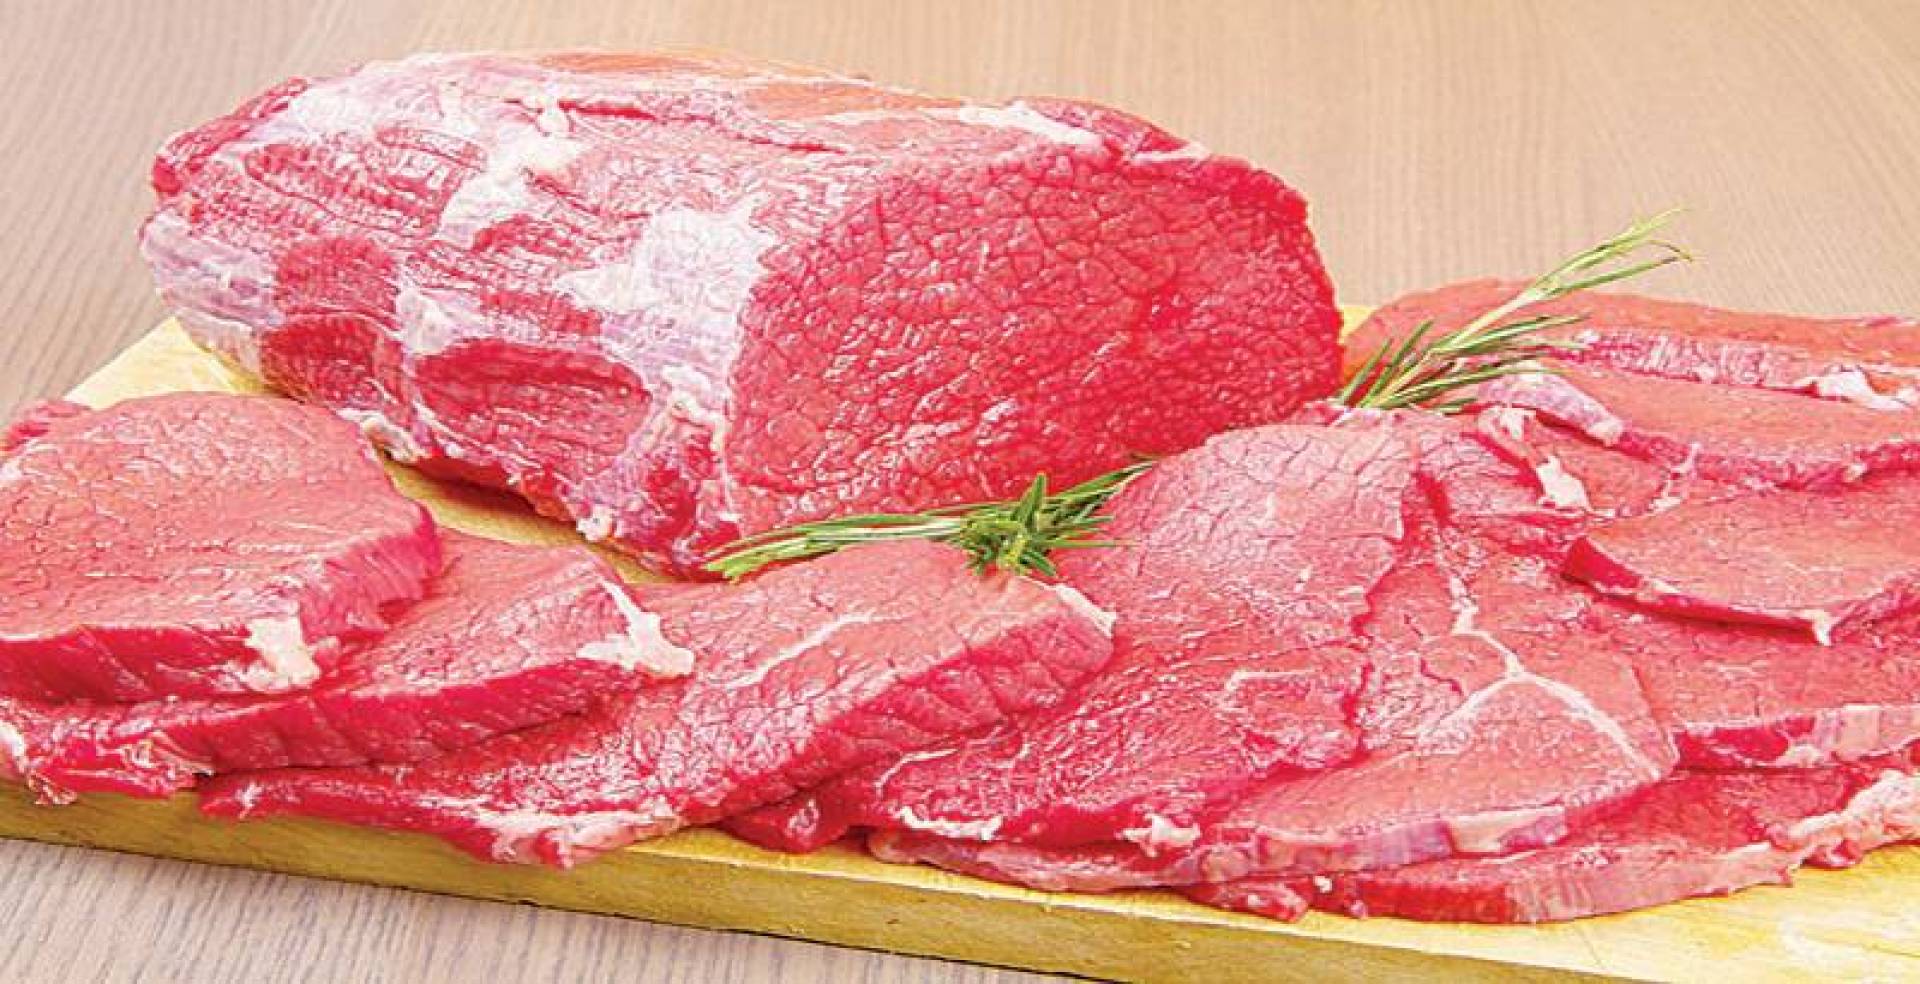 أضرار تناول اللحوم الحمراء بكثرة وأسباب عديدة تجعلك تحذر الإكثار منها